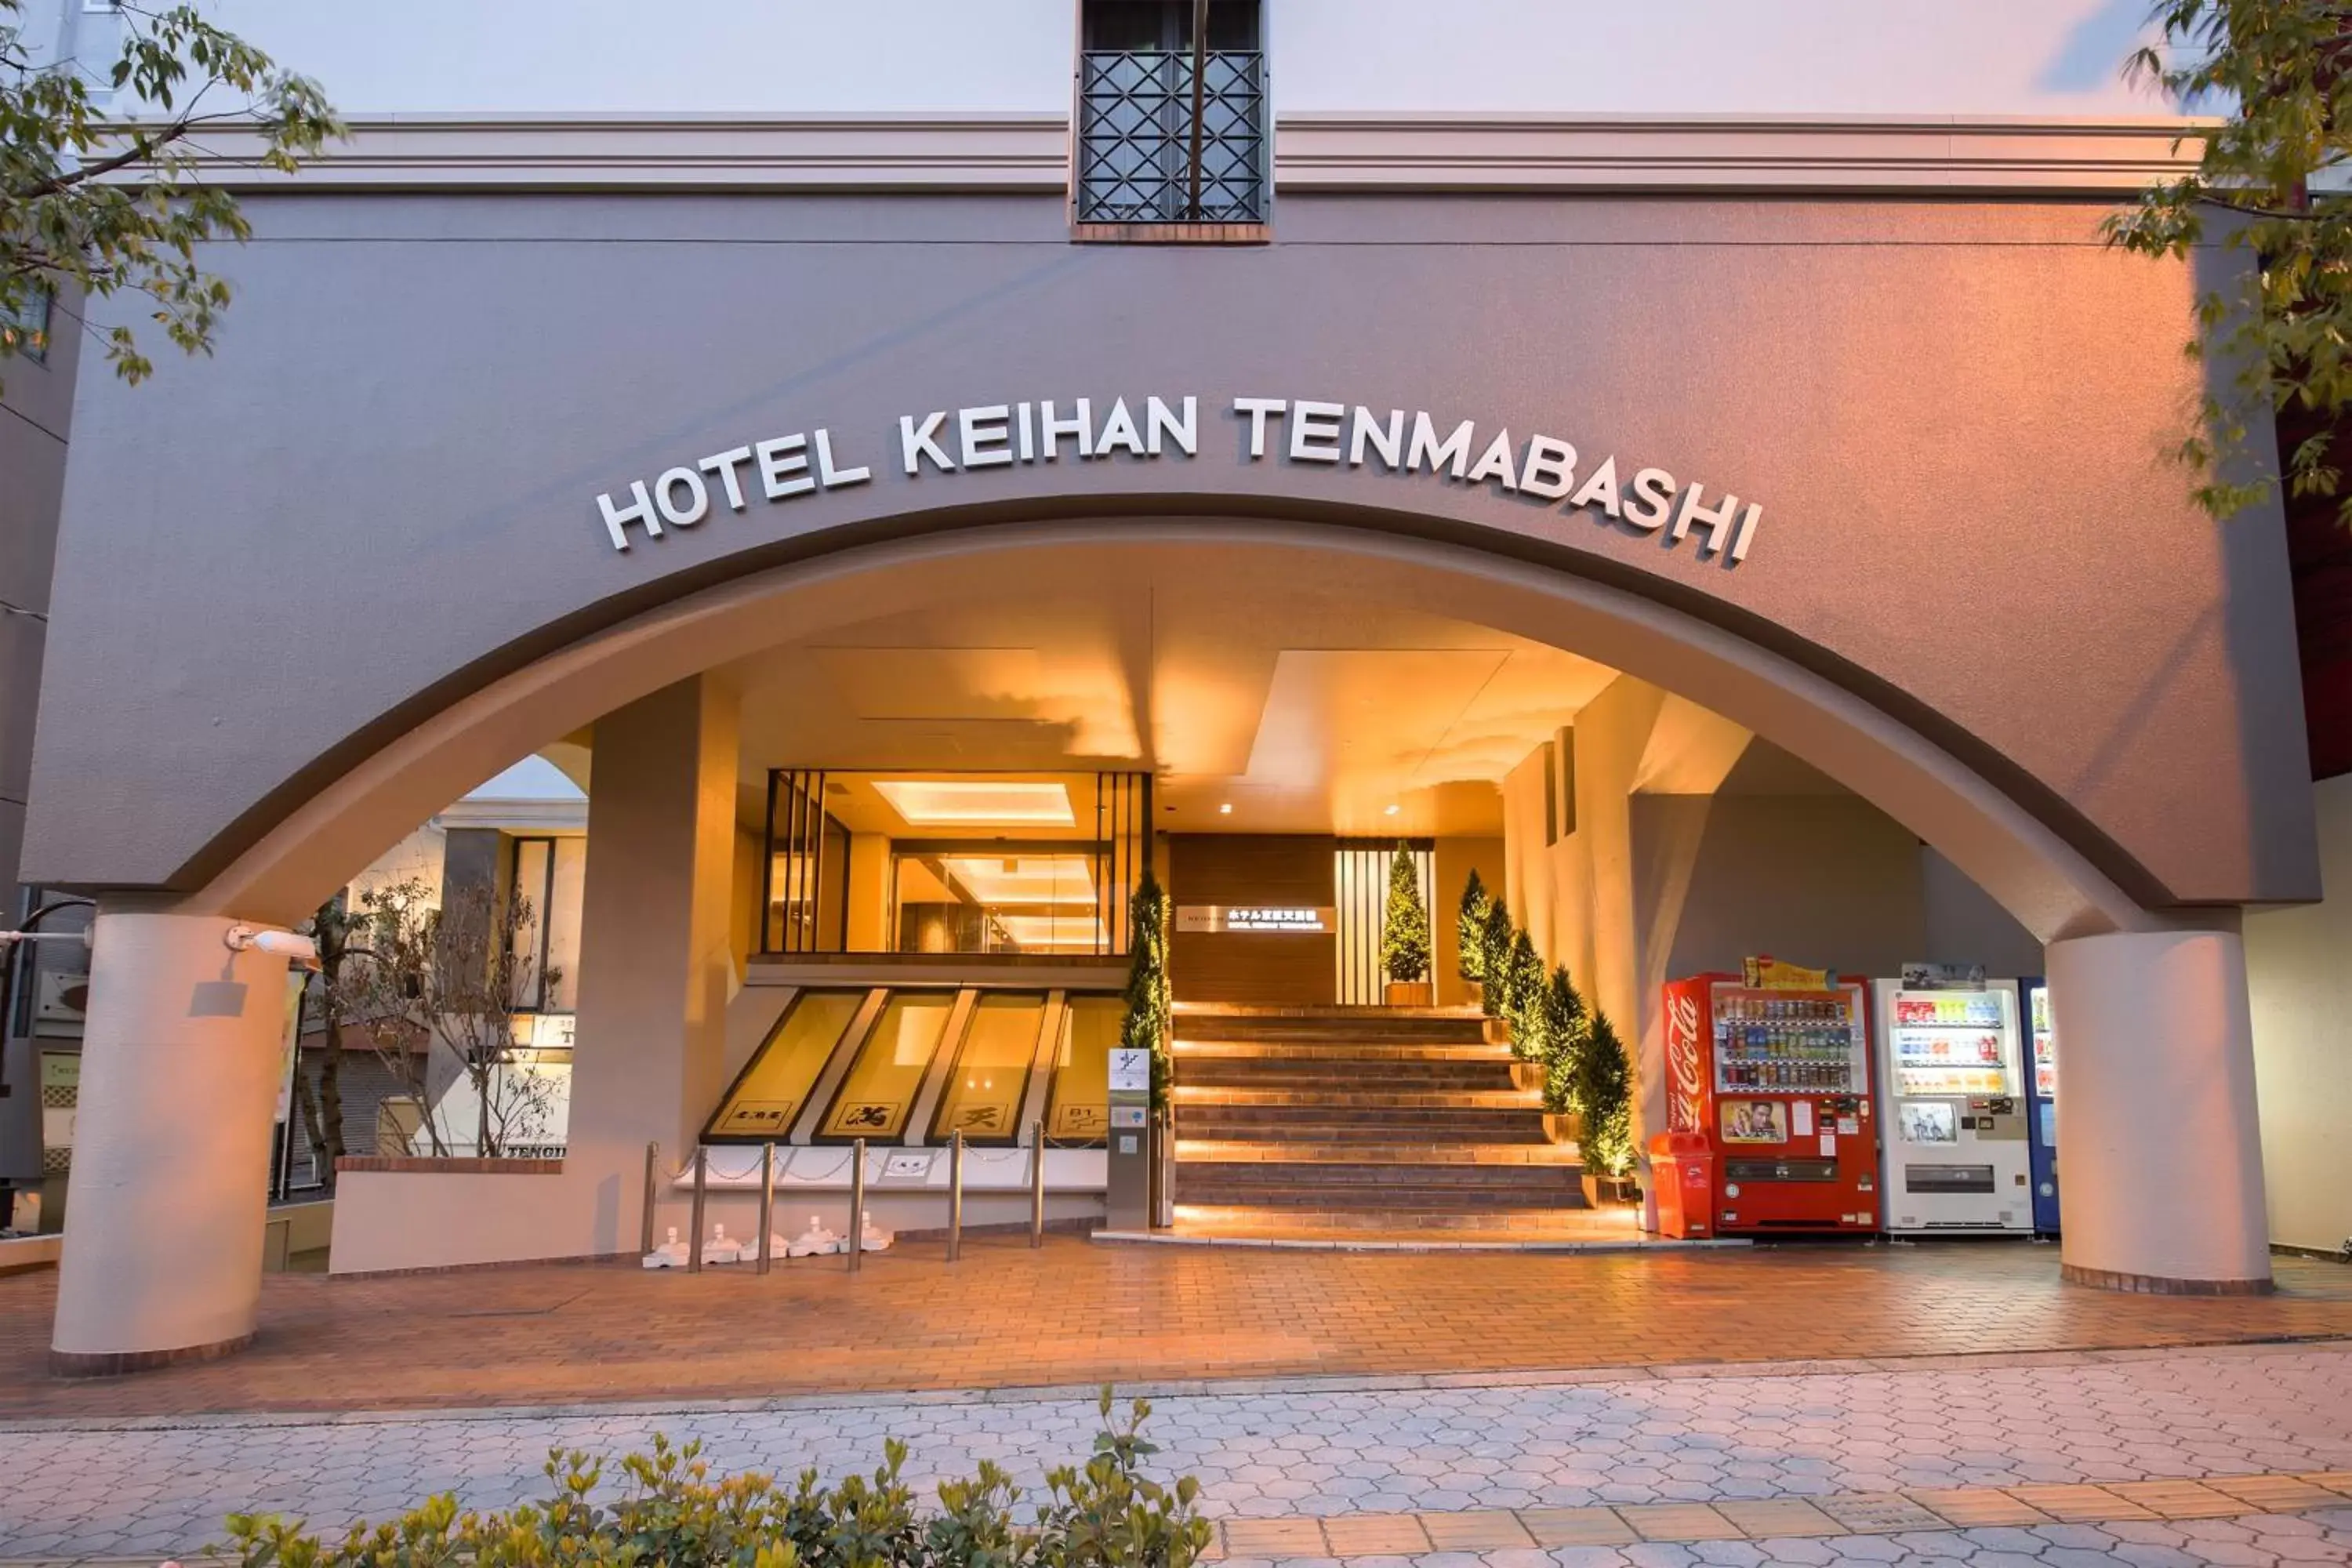 Property building in Hotel Keihan Tenmabashi